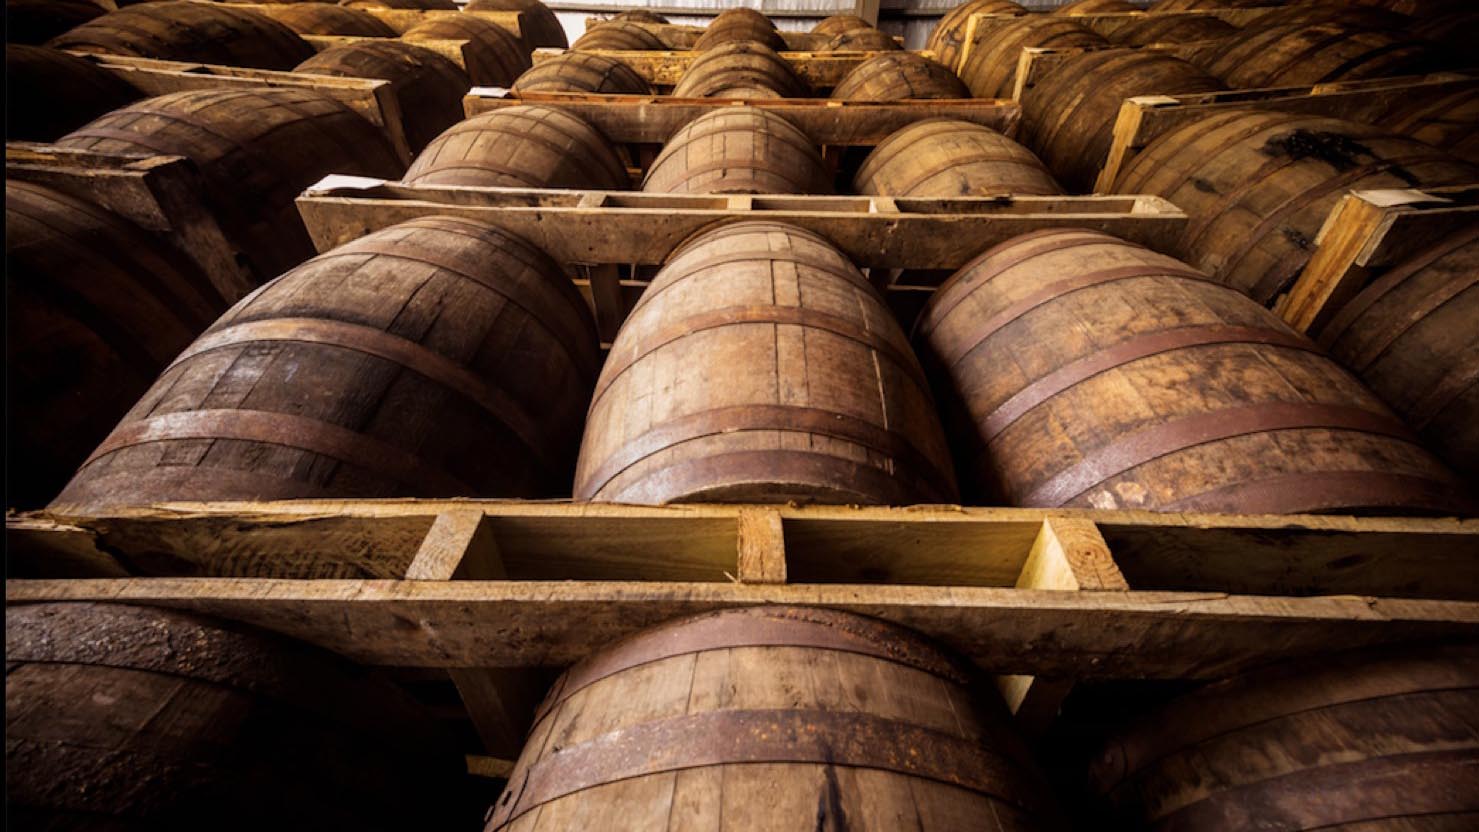 Ageing Rum wood barrels